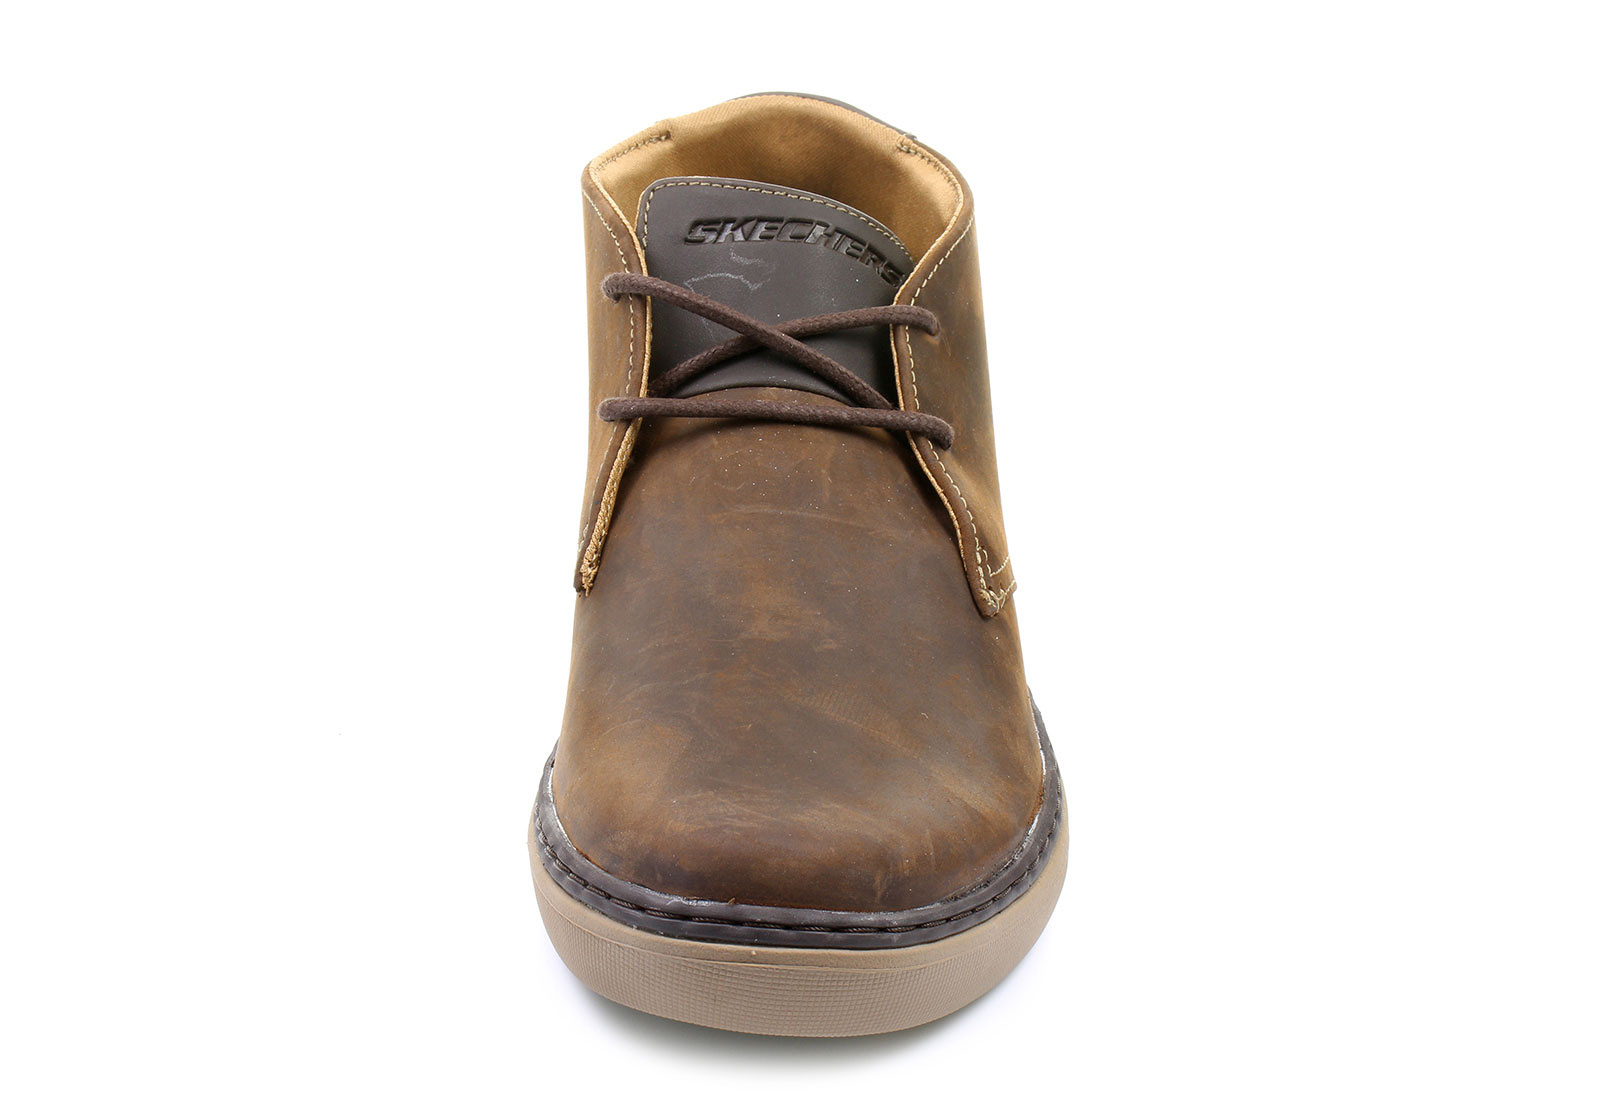 Skechers Memory Foam Braon Duboke cipele - Palen - - Shoes